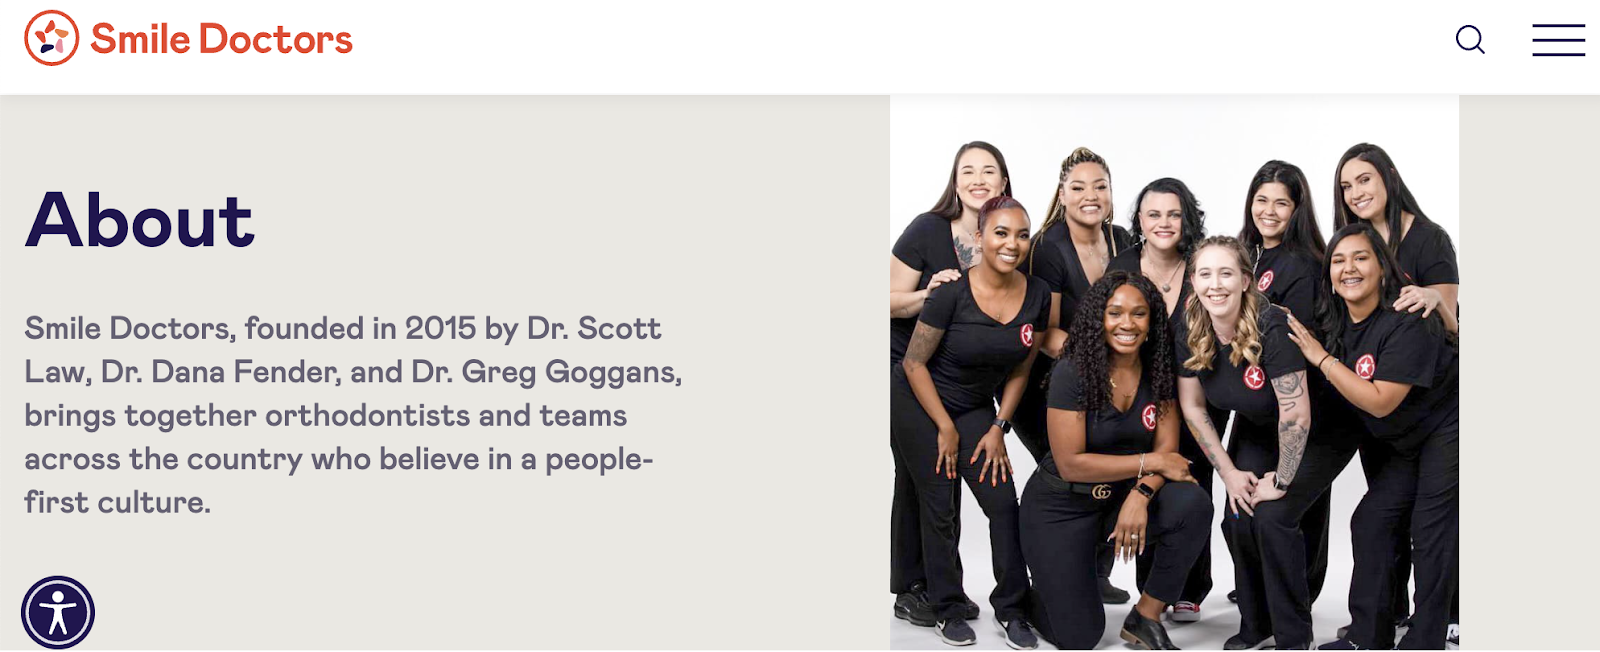 dental marknadsföringskampanjer, Smile Doctors hemsida